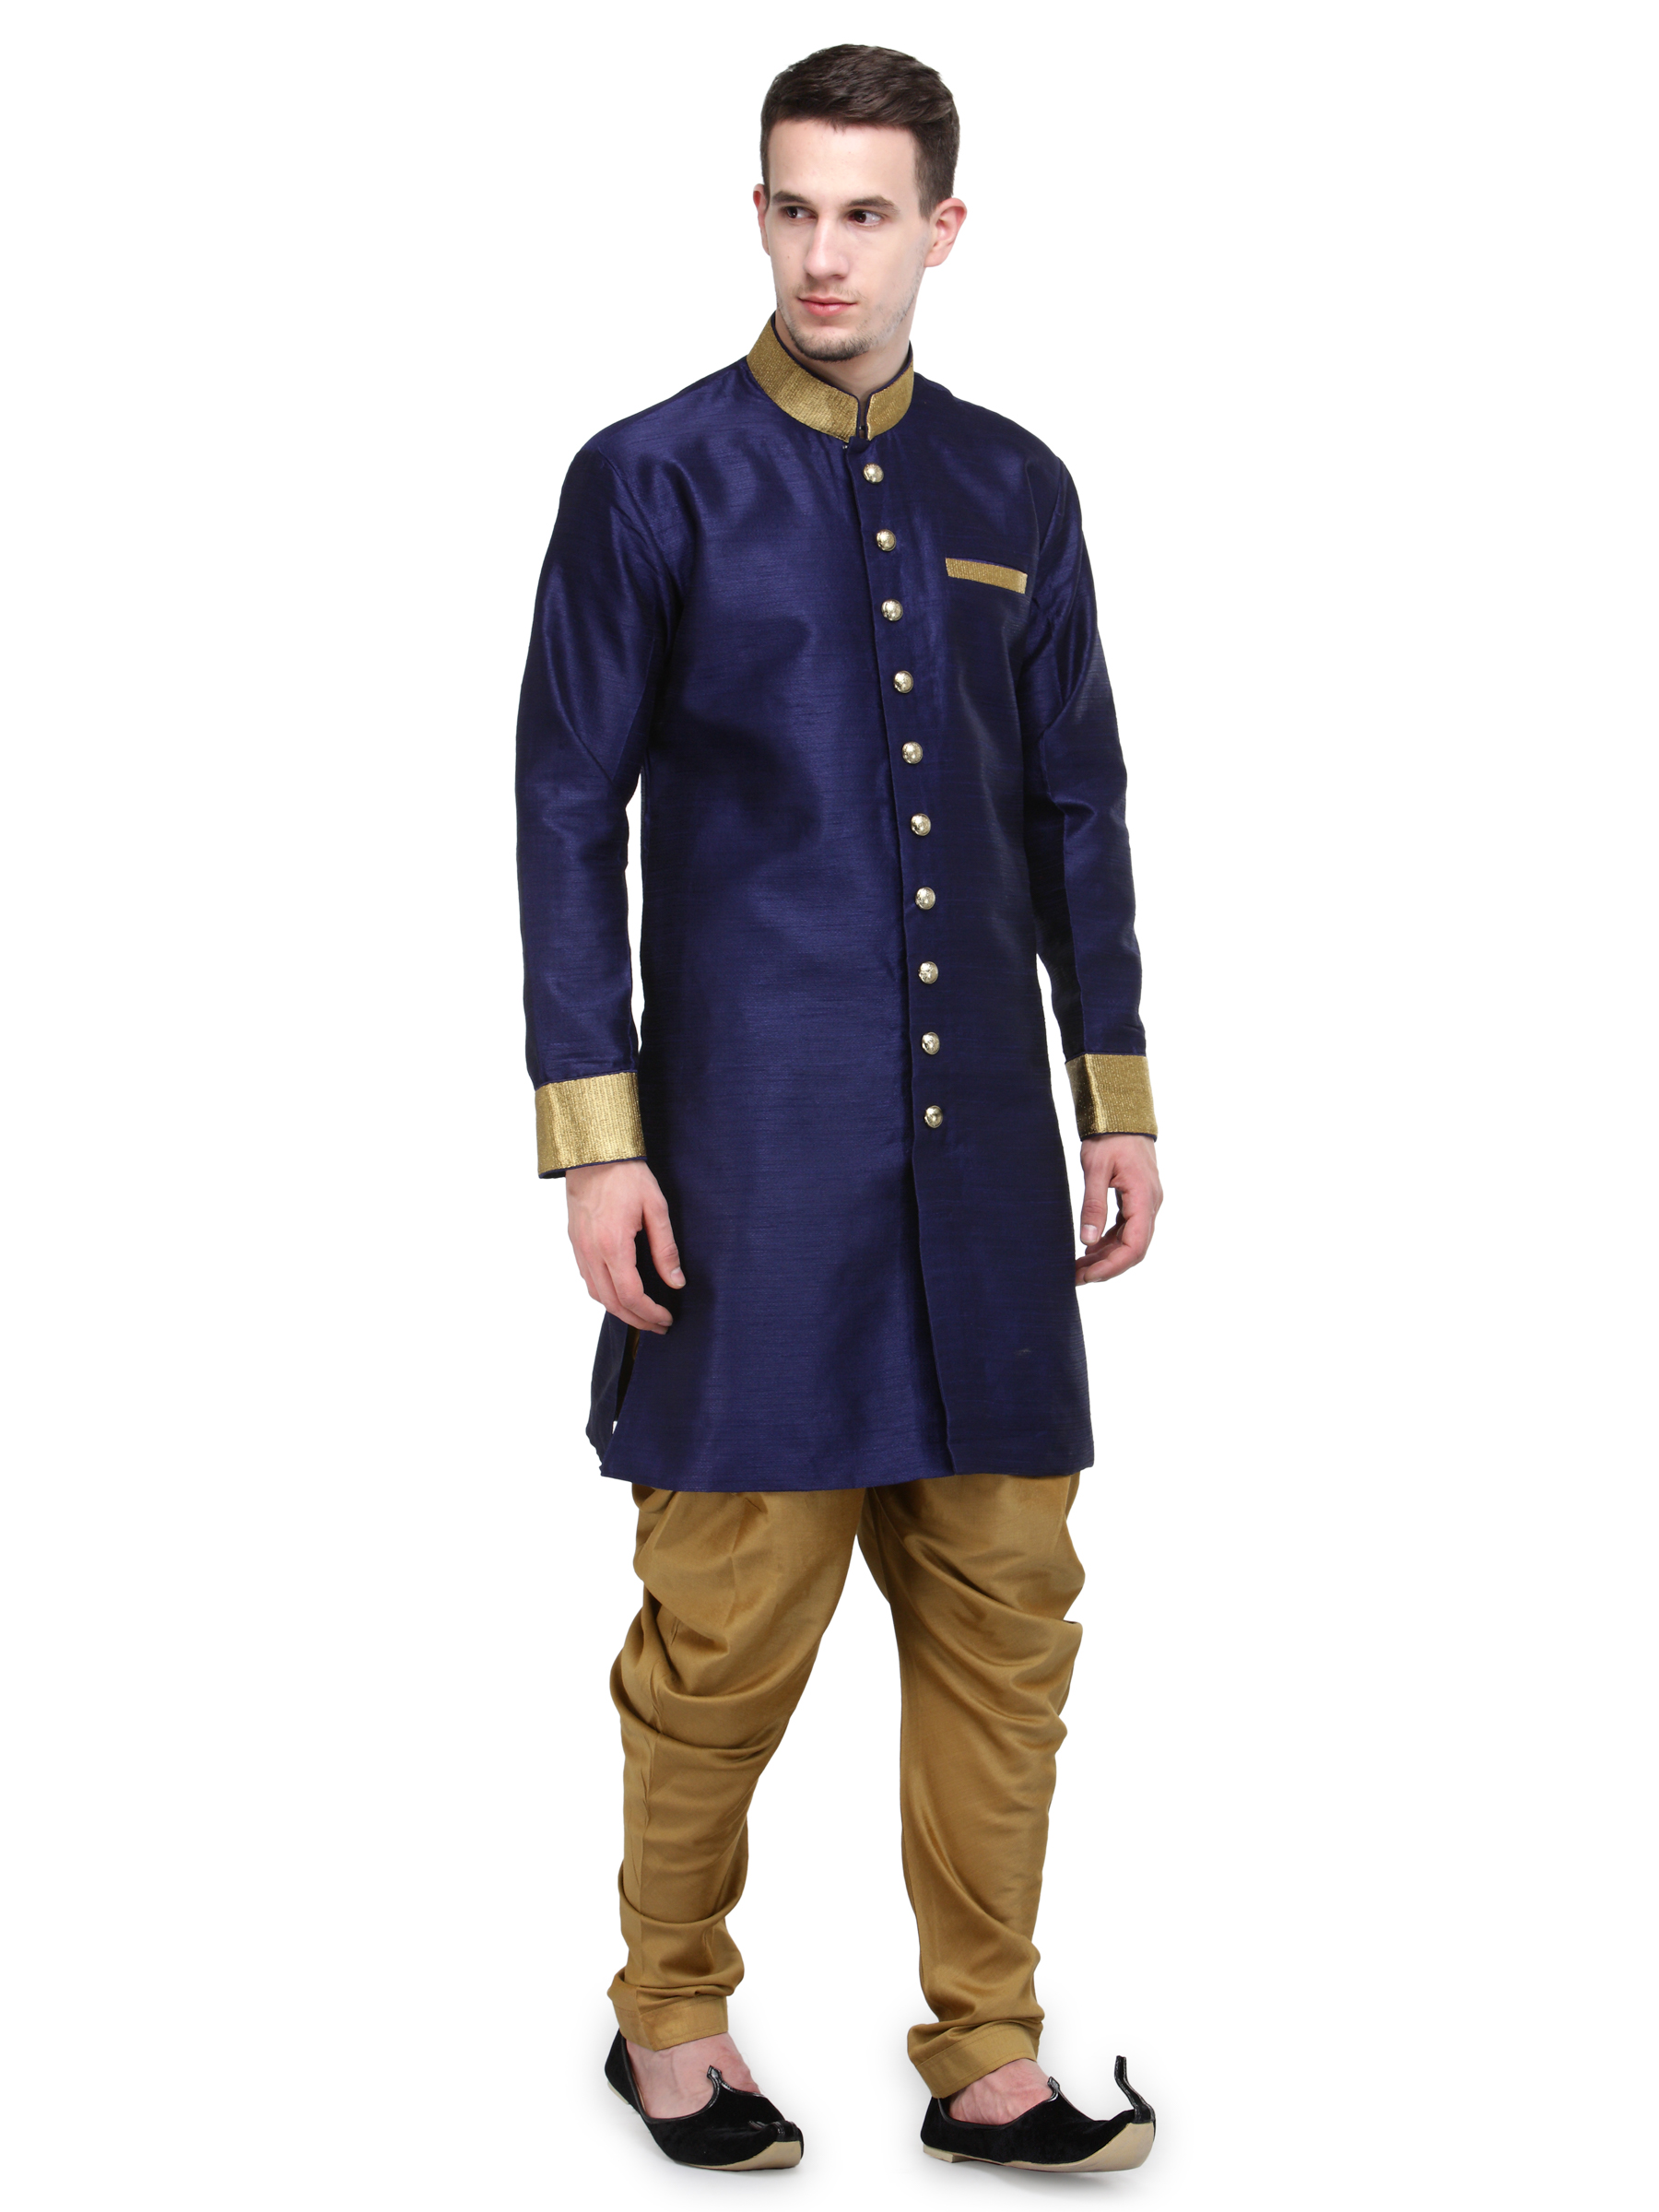 Buy RG Designers Navy And Gold Plain Sherwani For Men Online @ ₹2449 ...